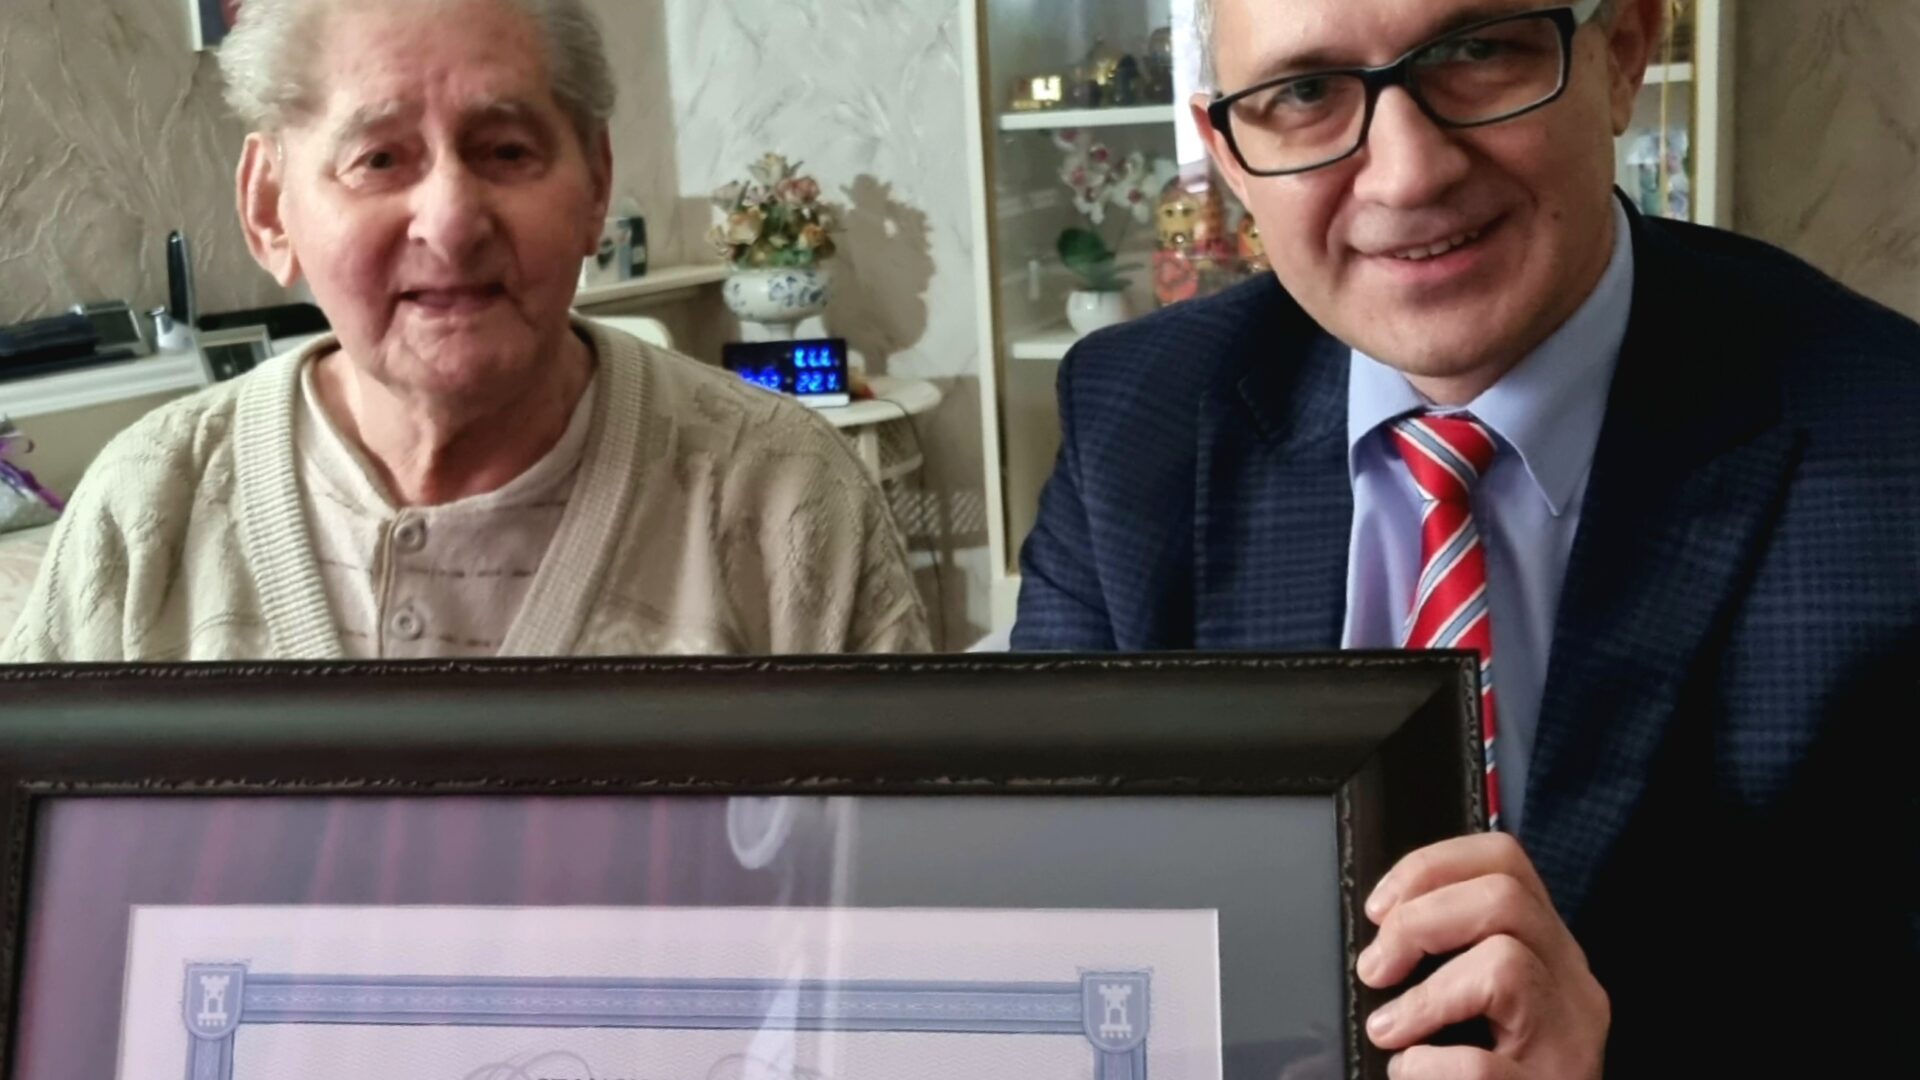 Zdjecie przedstawia stulatka z Pleszewa wraz z burmistrzem MiG Pleszew, od którego otrzymał odznaczenie z okazji 100 urodzin